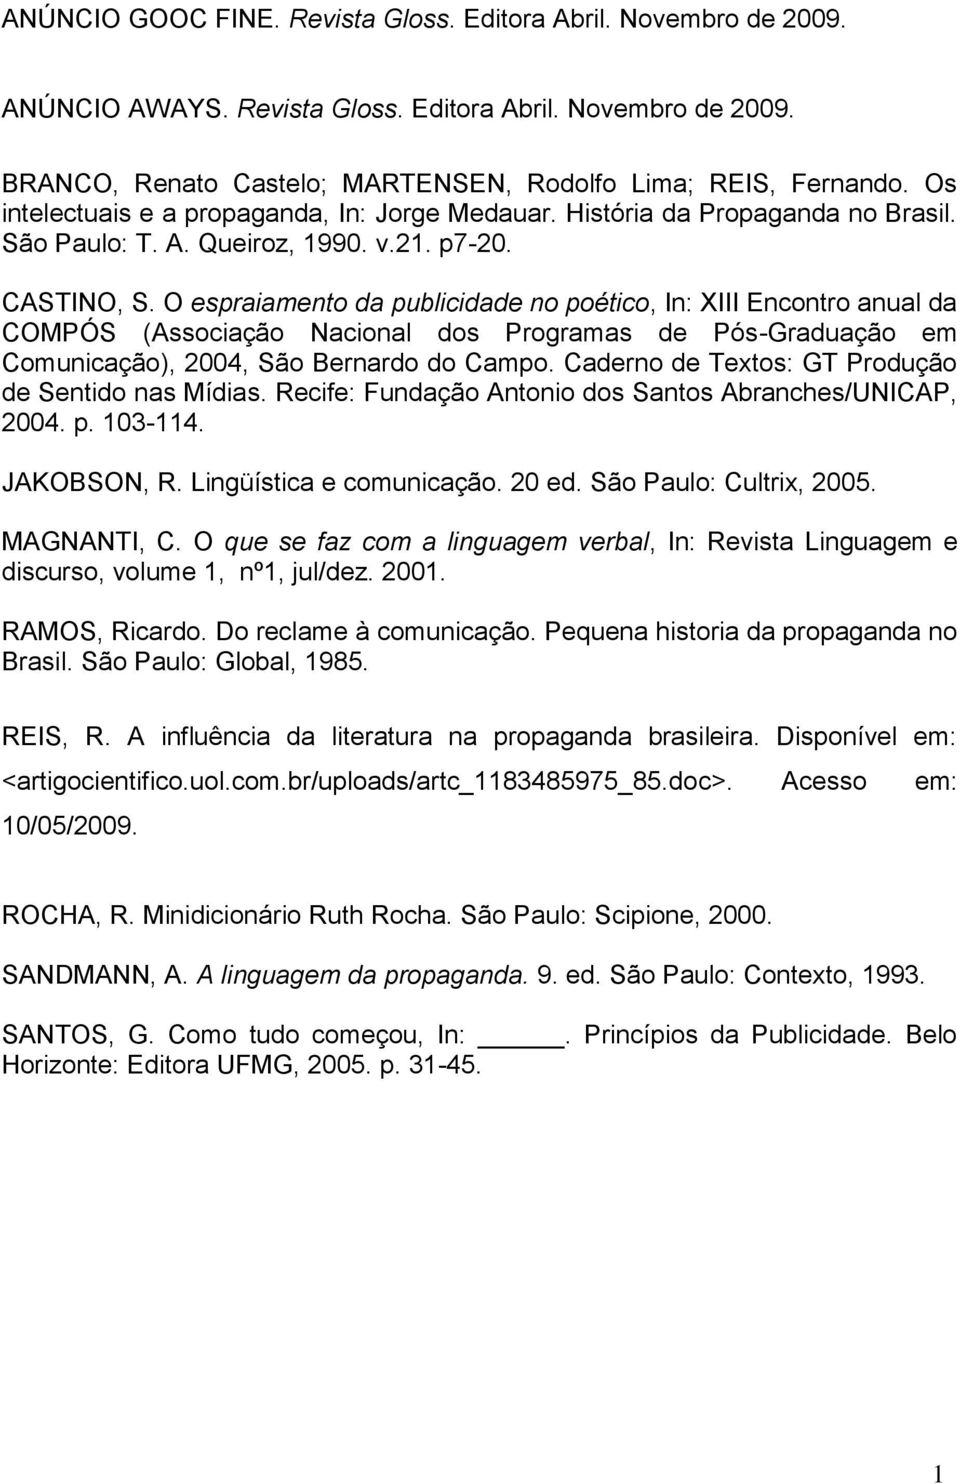 O espraiamento da publicidade no poético, In: XIII Encontro anual da COMPÓS (Associação Nacional dos Programas de Pós-Graduação em Comunicação), 2004, São Bernardo do Campo.